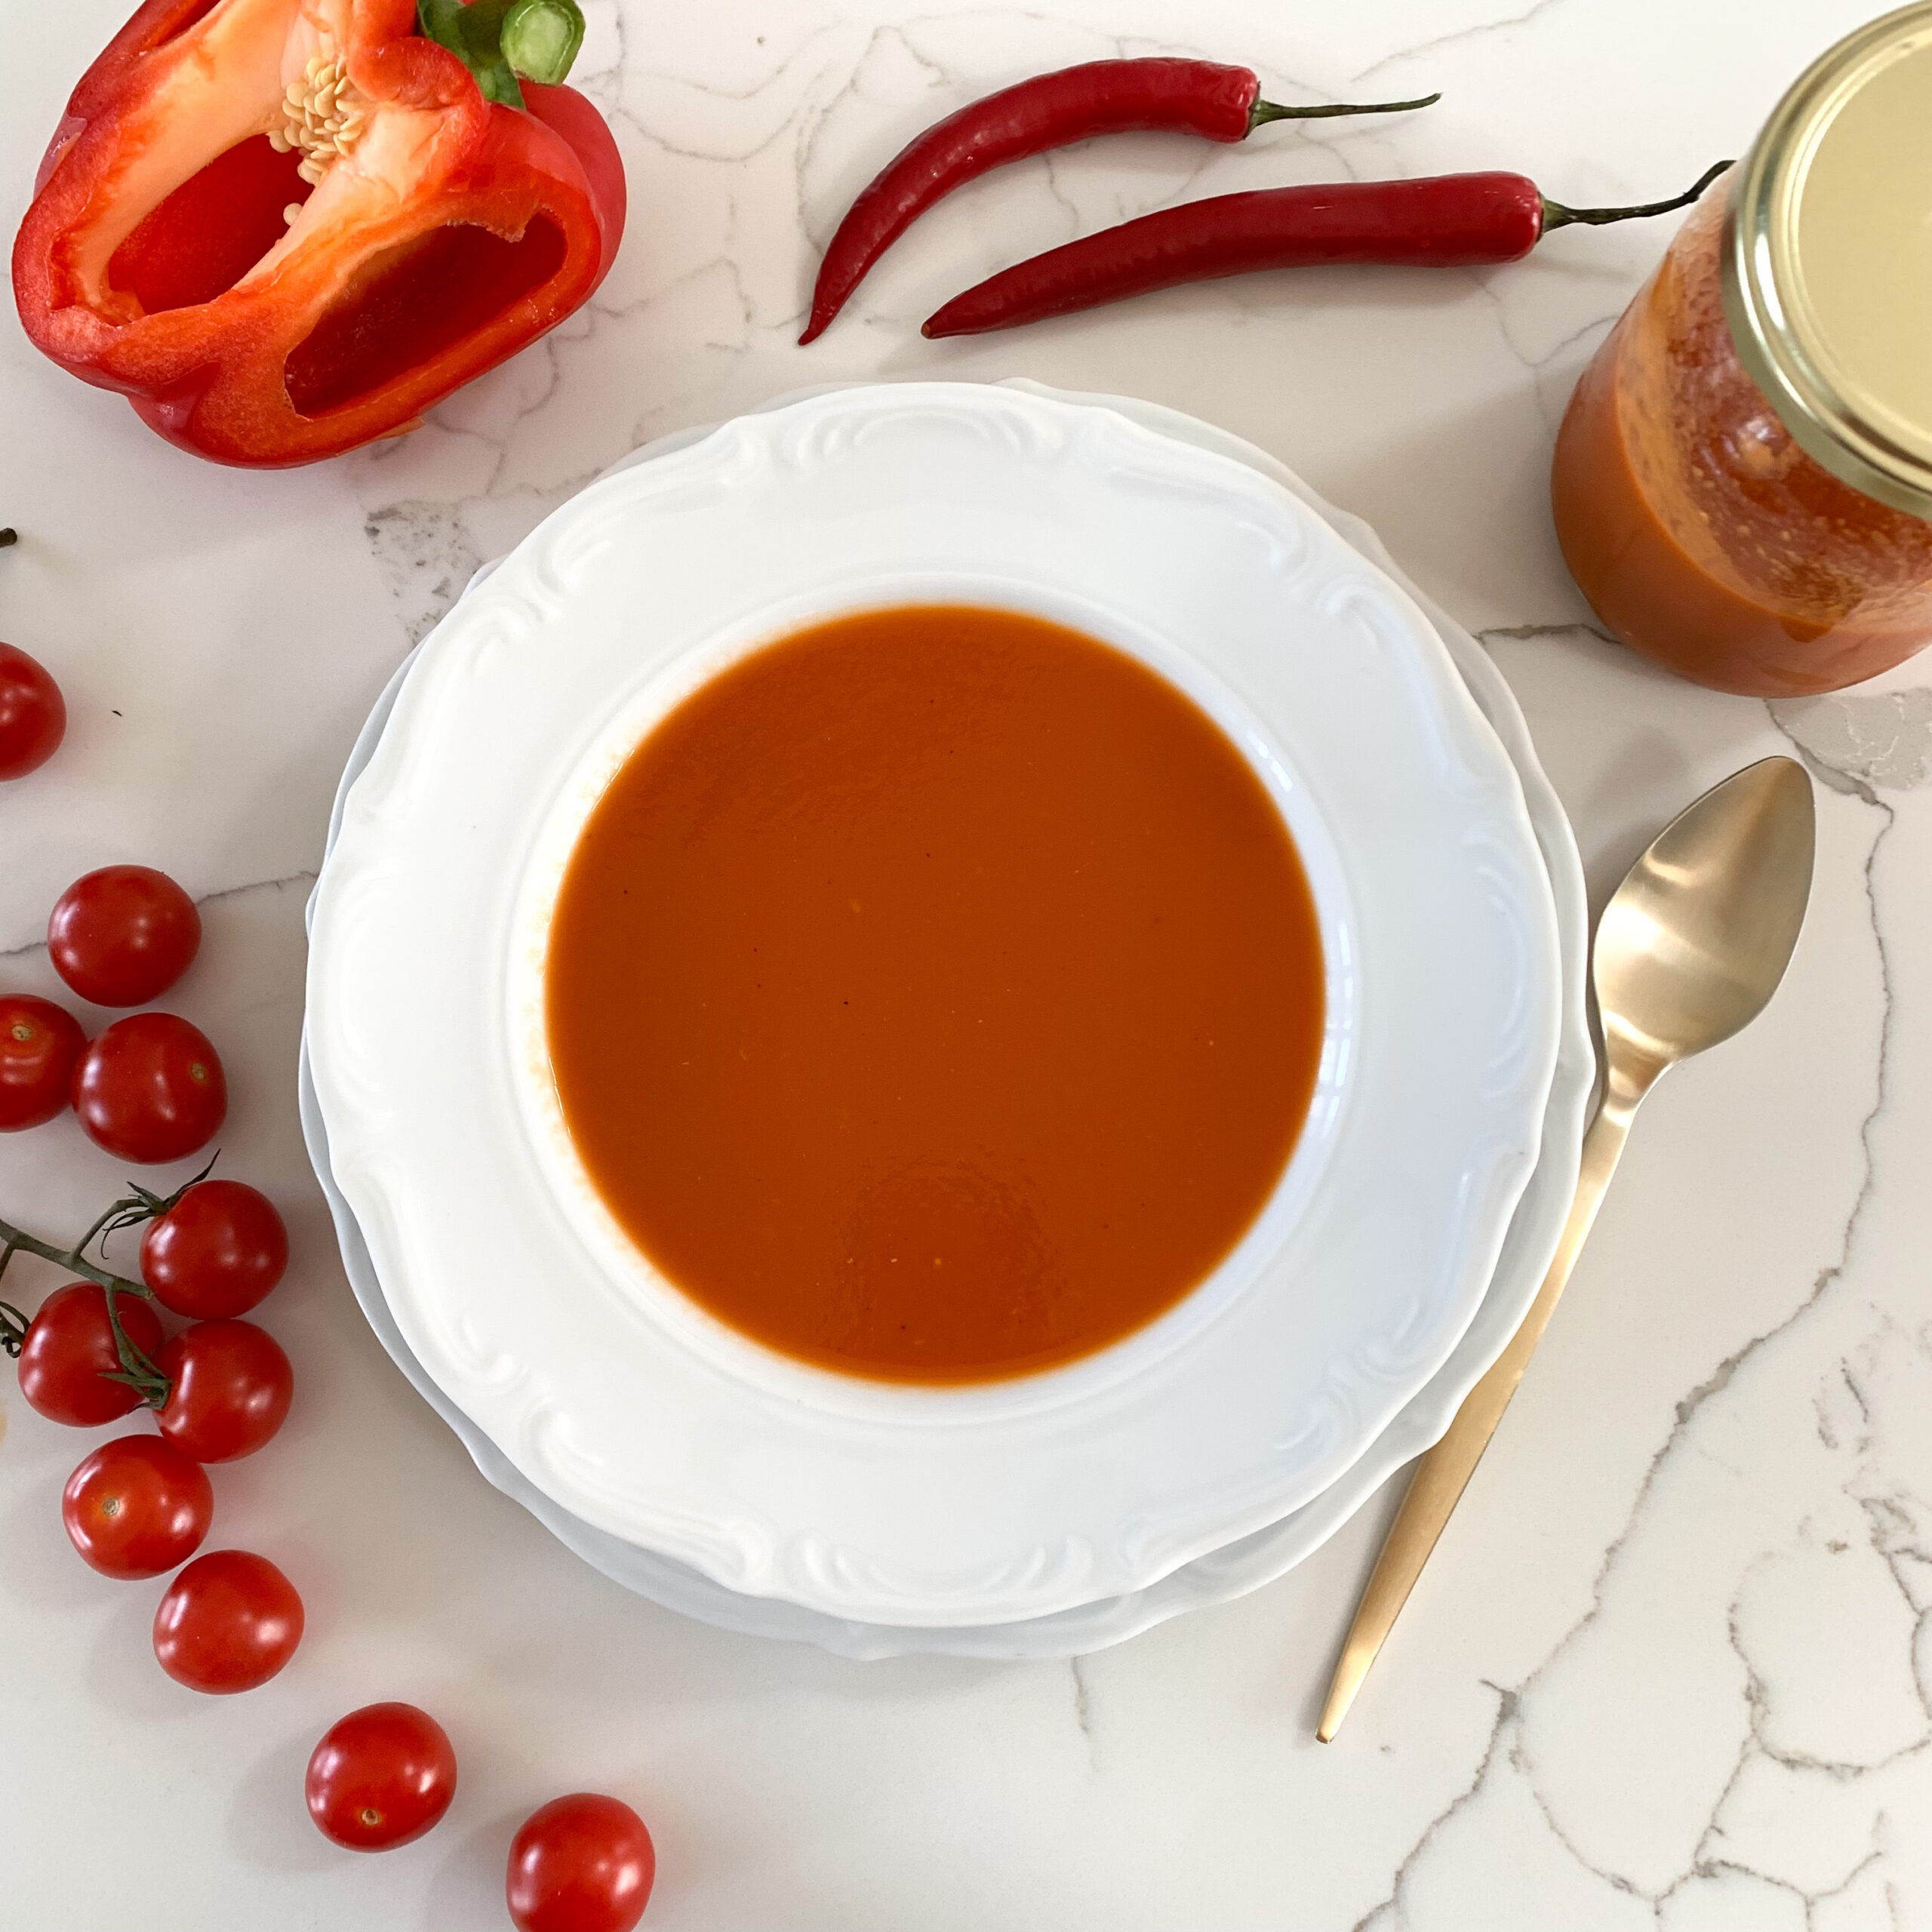 zupa krem z pomidorów, dieta zupowa, zdrowa zupa